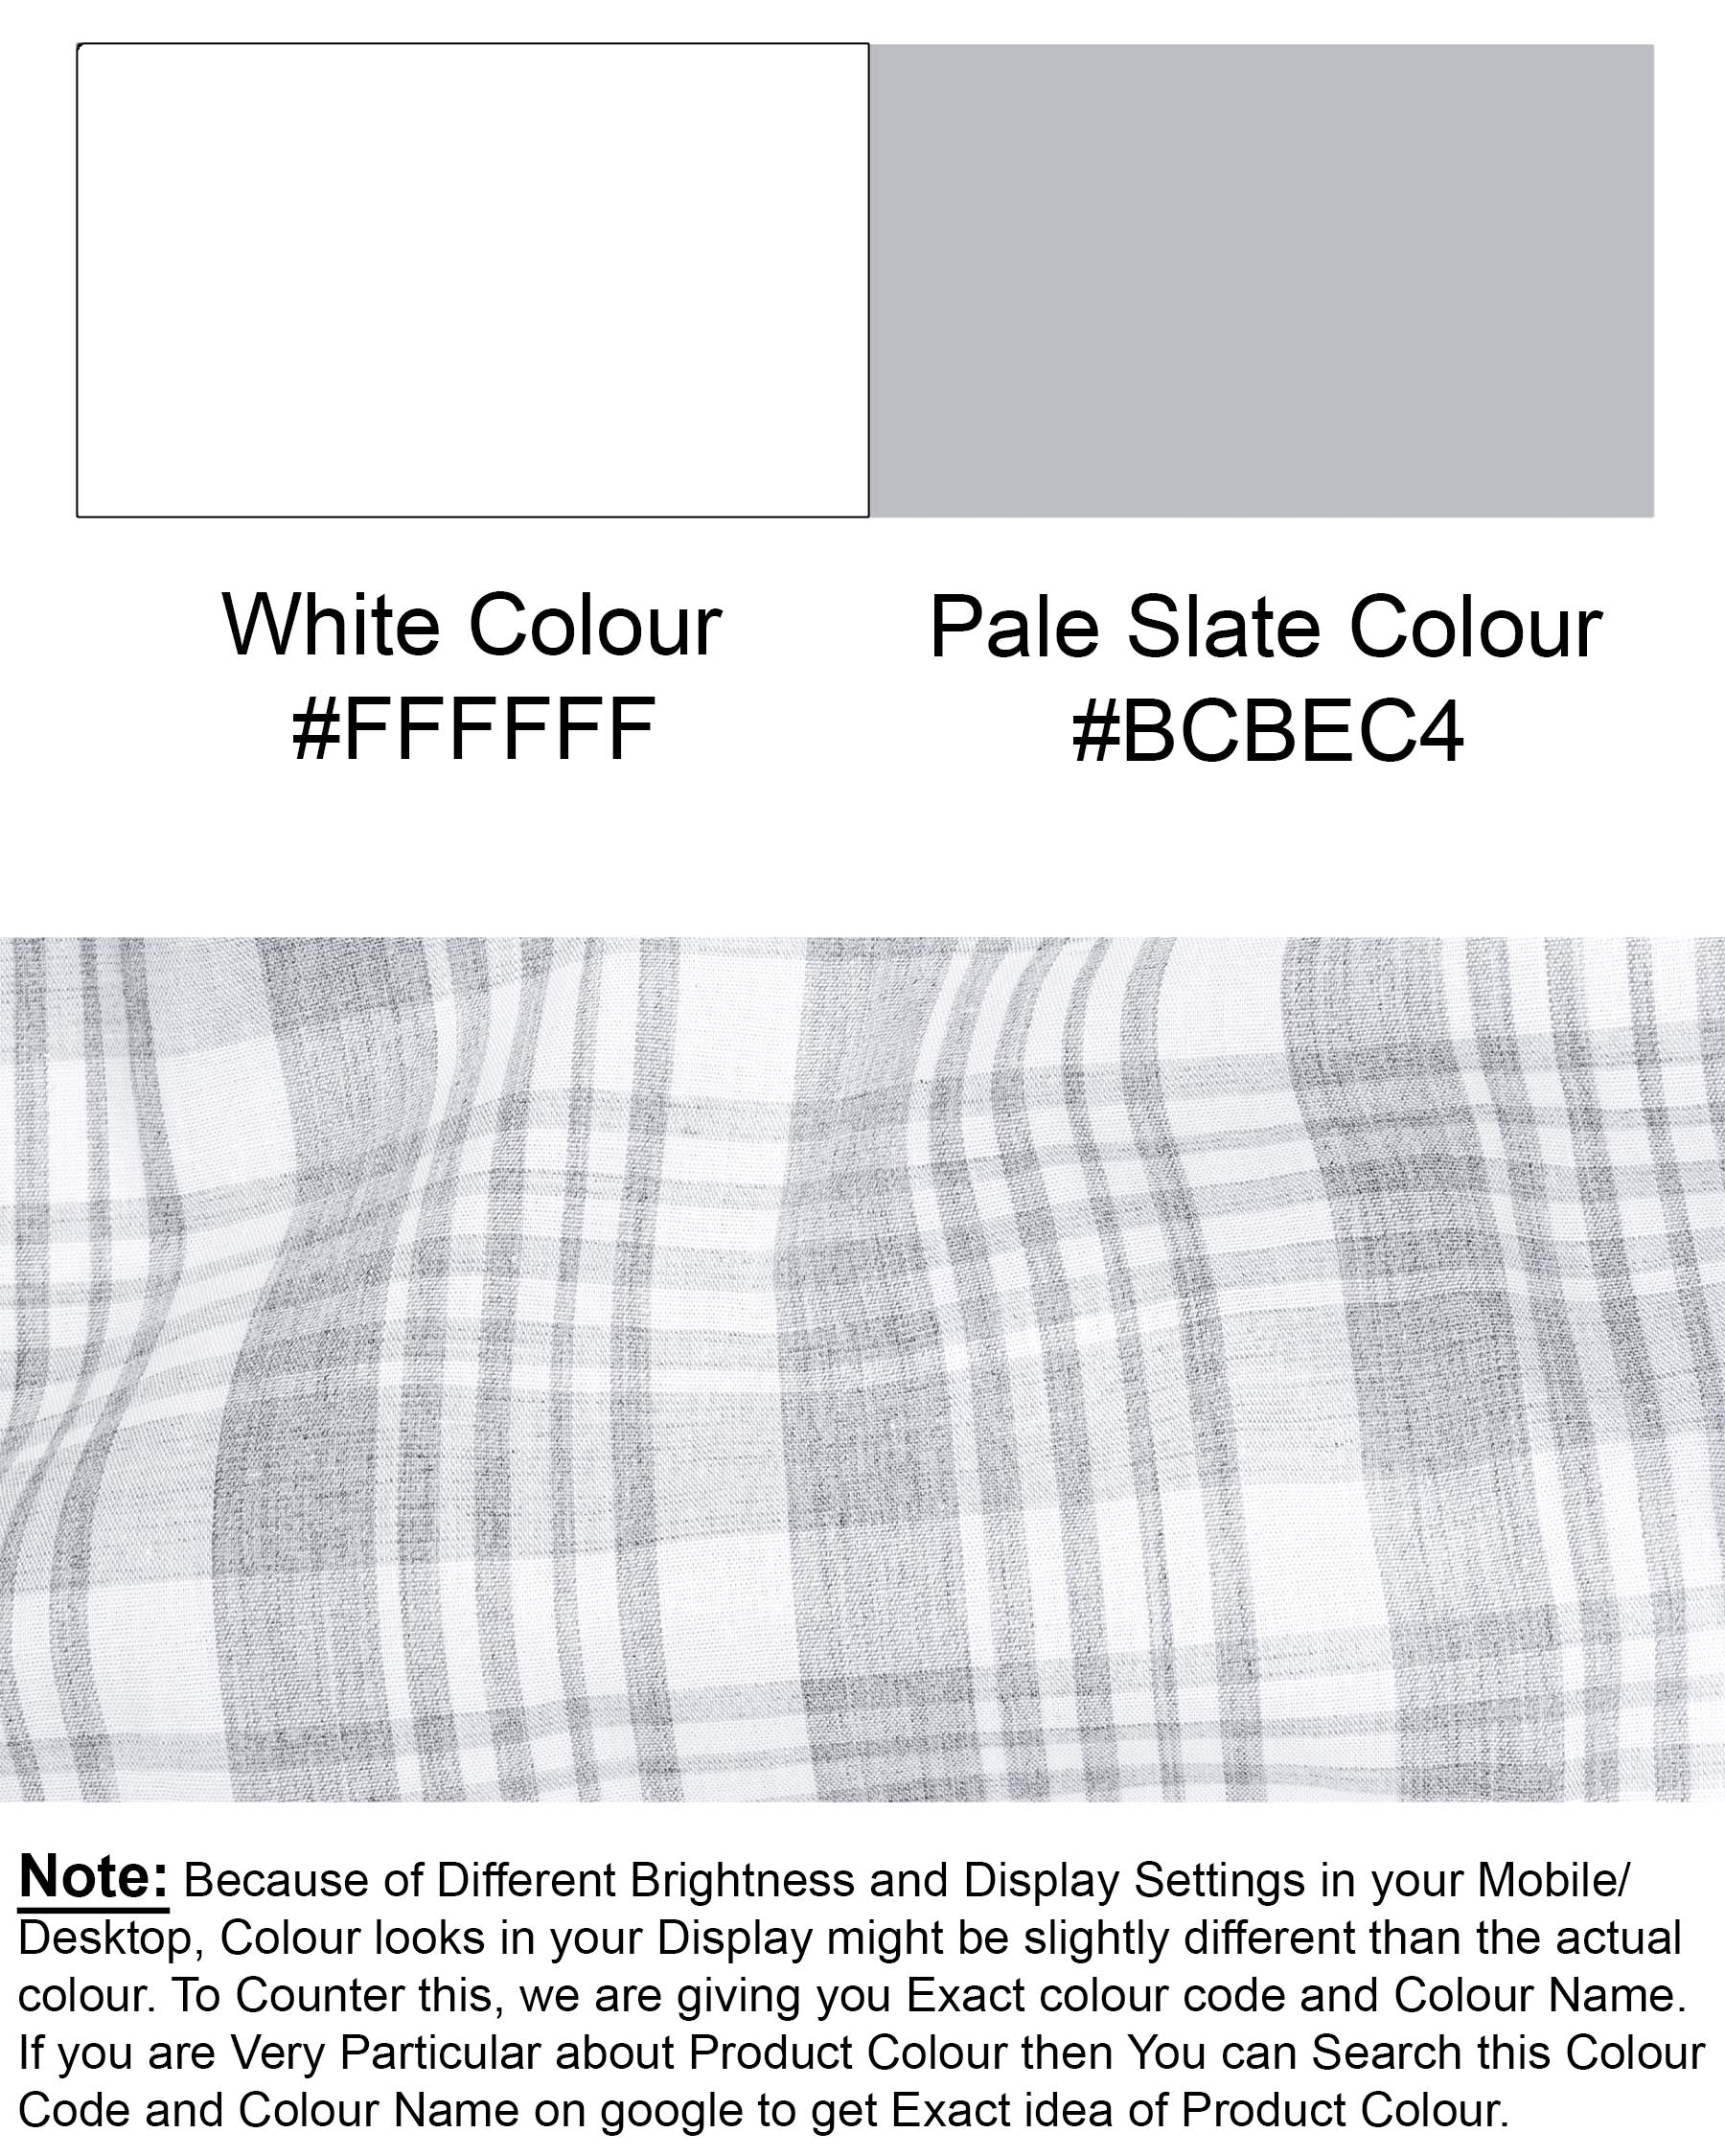 Bright White with Pale Slate Gray Premium Cotton Shirt 6952-BLK-38,6952-BLK-H-38,6952-BLK-39,6952-BLK-H-39,6952-BLK-40,6952-BLK-H-40,6952-BLK-42,6952-BLK-H-42,6952-BLK-44,6952-BLK-H-44,6952-BLK-46,6952-BLK-H-46,6952-BLK-48,6952-BLK-H-48,6952-BLK-50,6952-BLK-H-50,6952-BLK-52,6952-BLK-H-52